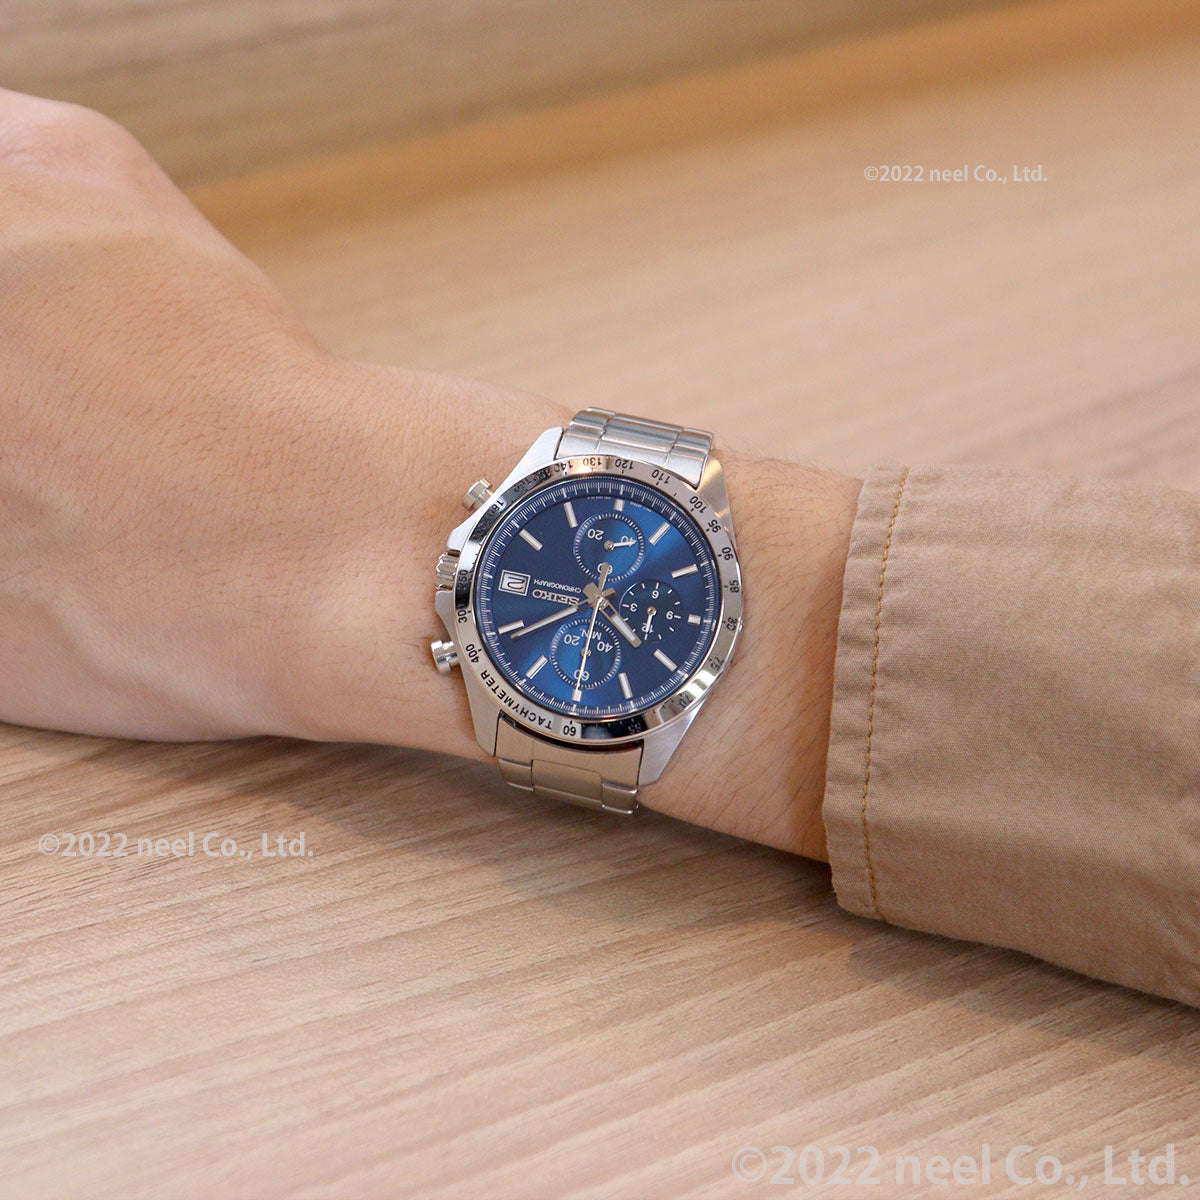 セイコー セレクション SEIKO SELECTION 8Tクロノ SBTR023 腕時計 メンズ クロノグラフ